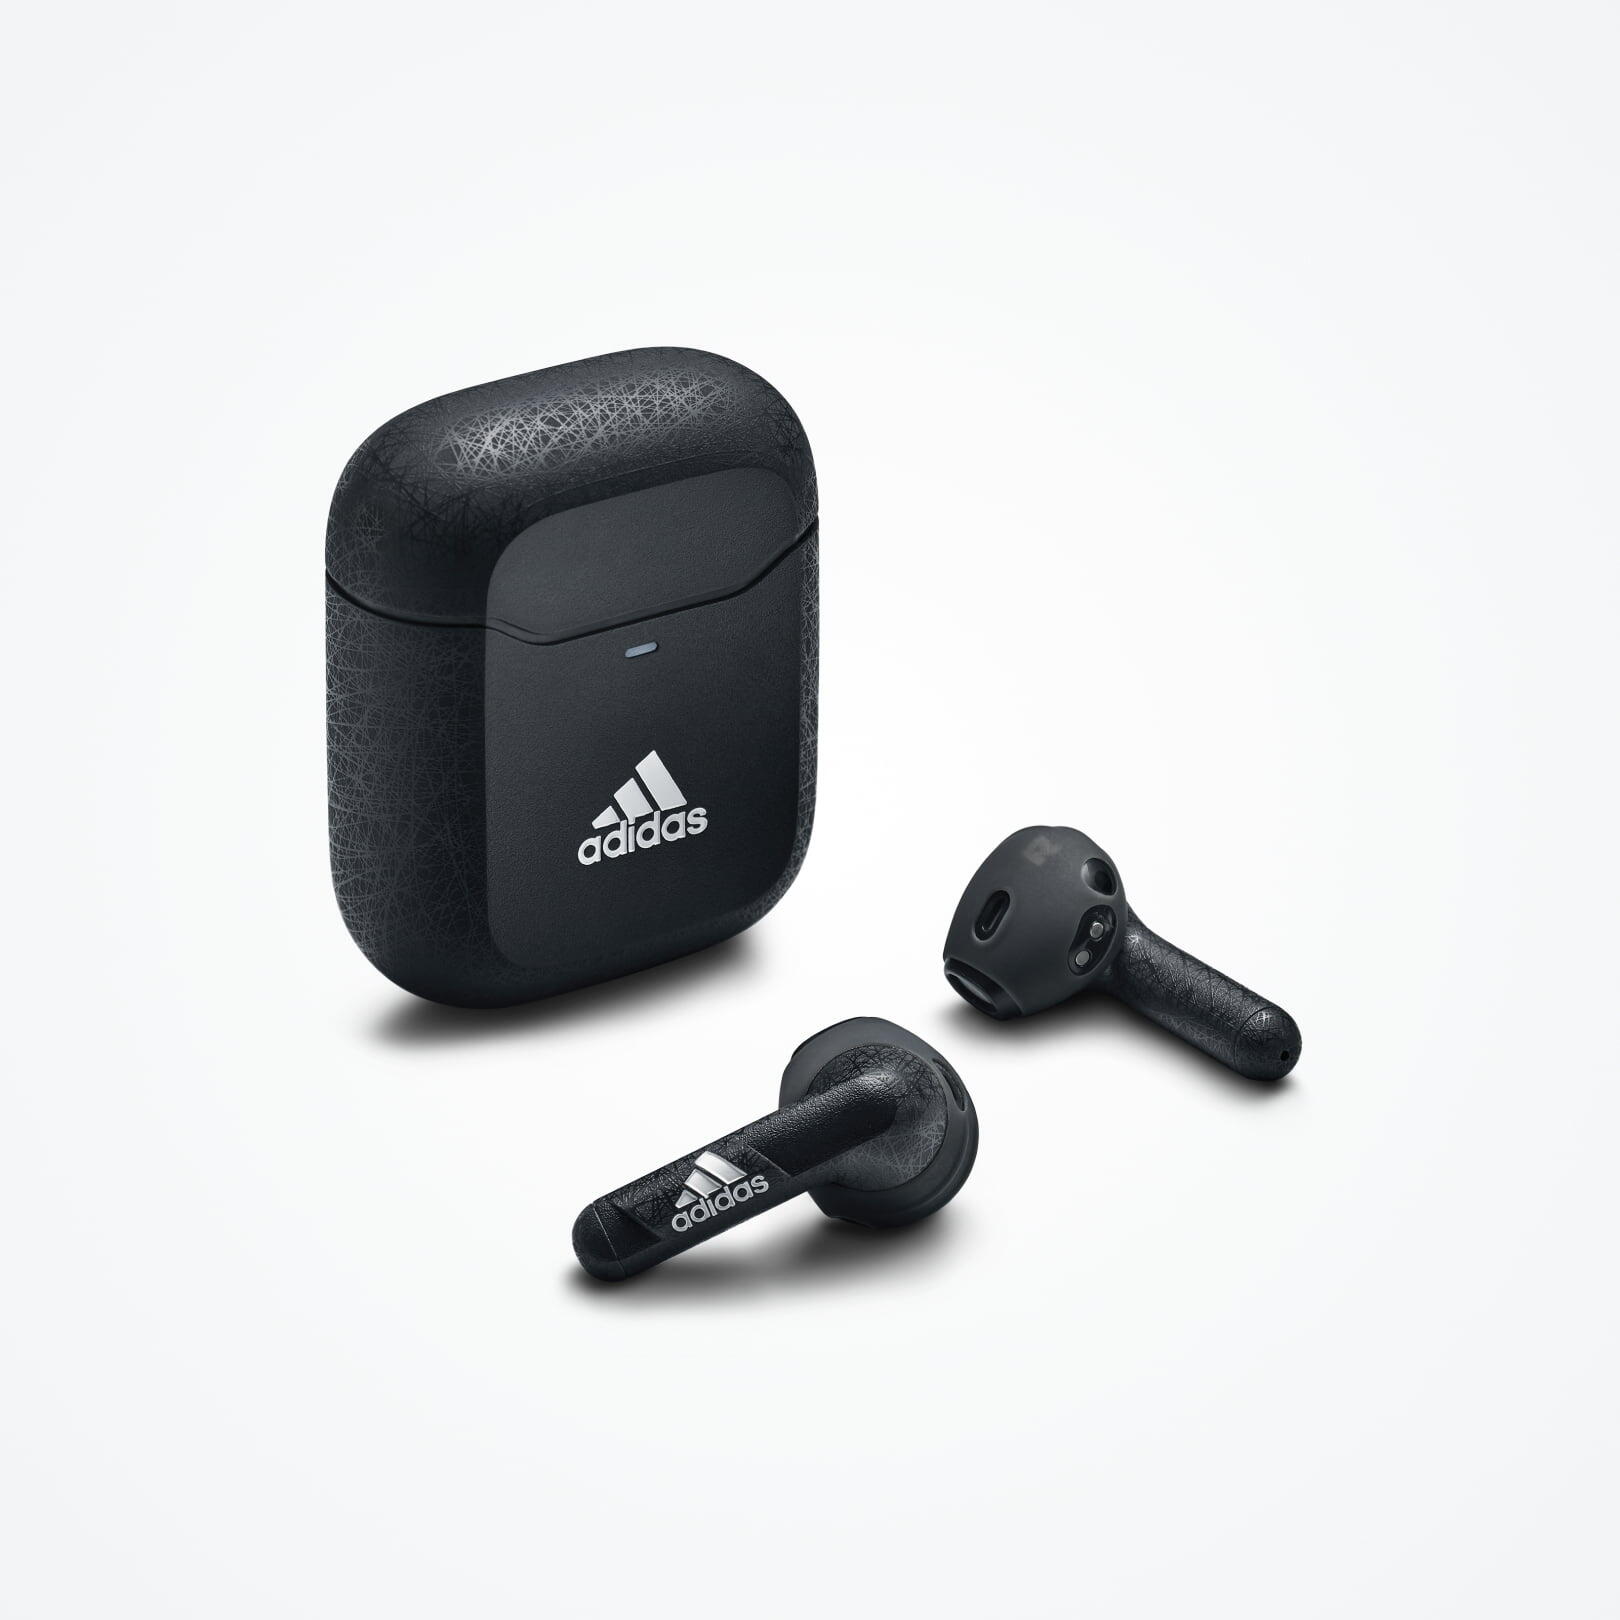 Adidas Z.N.E 01 True Wireless Earbuds - night grey 4/7